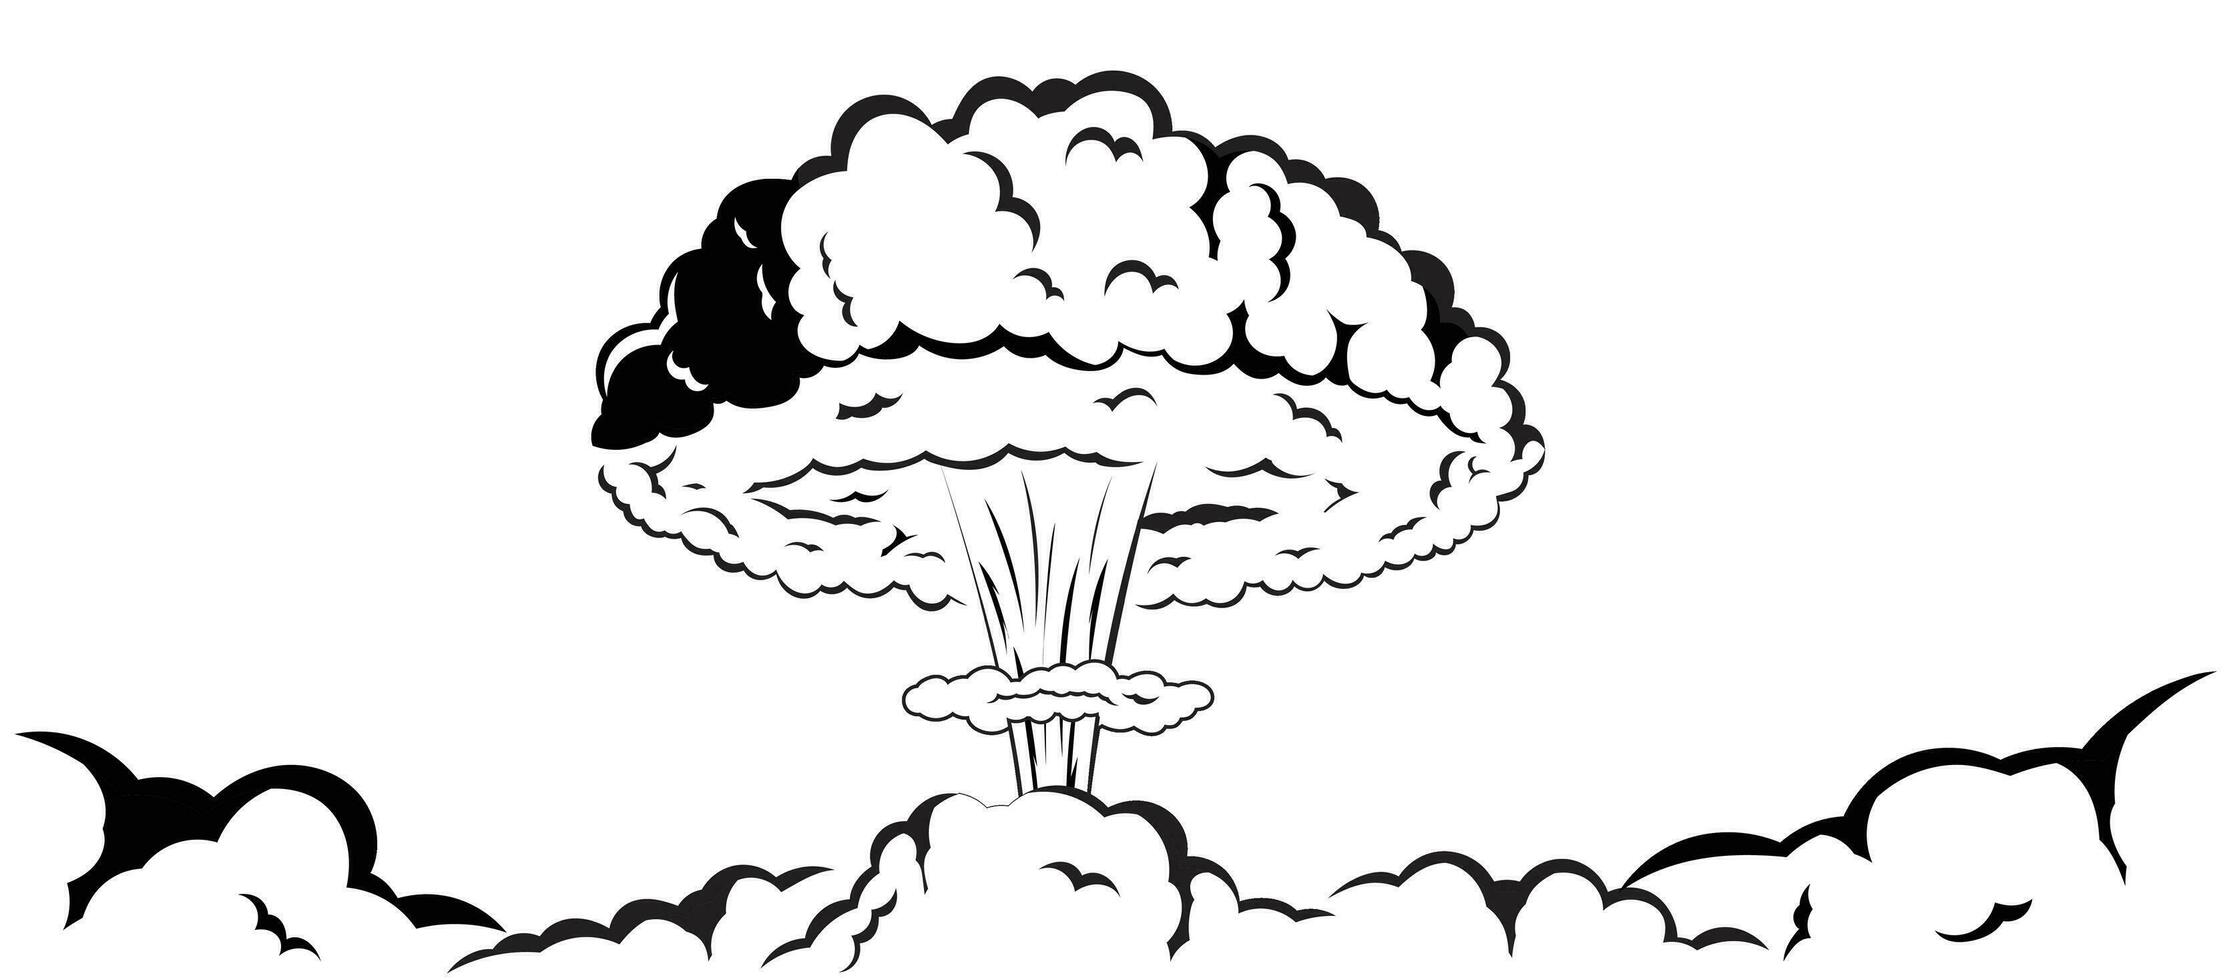 cogumelo fumaça efeito nuclear bombear explosão rabisco desenhando Preto e branco vetor